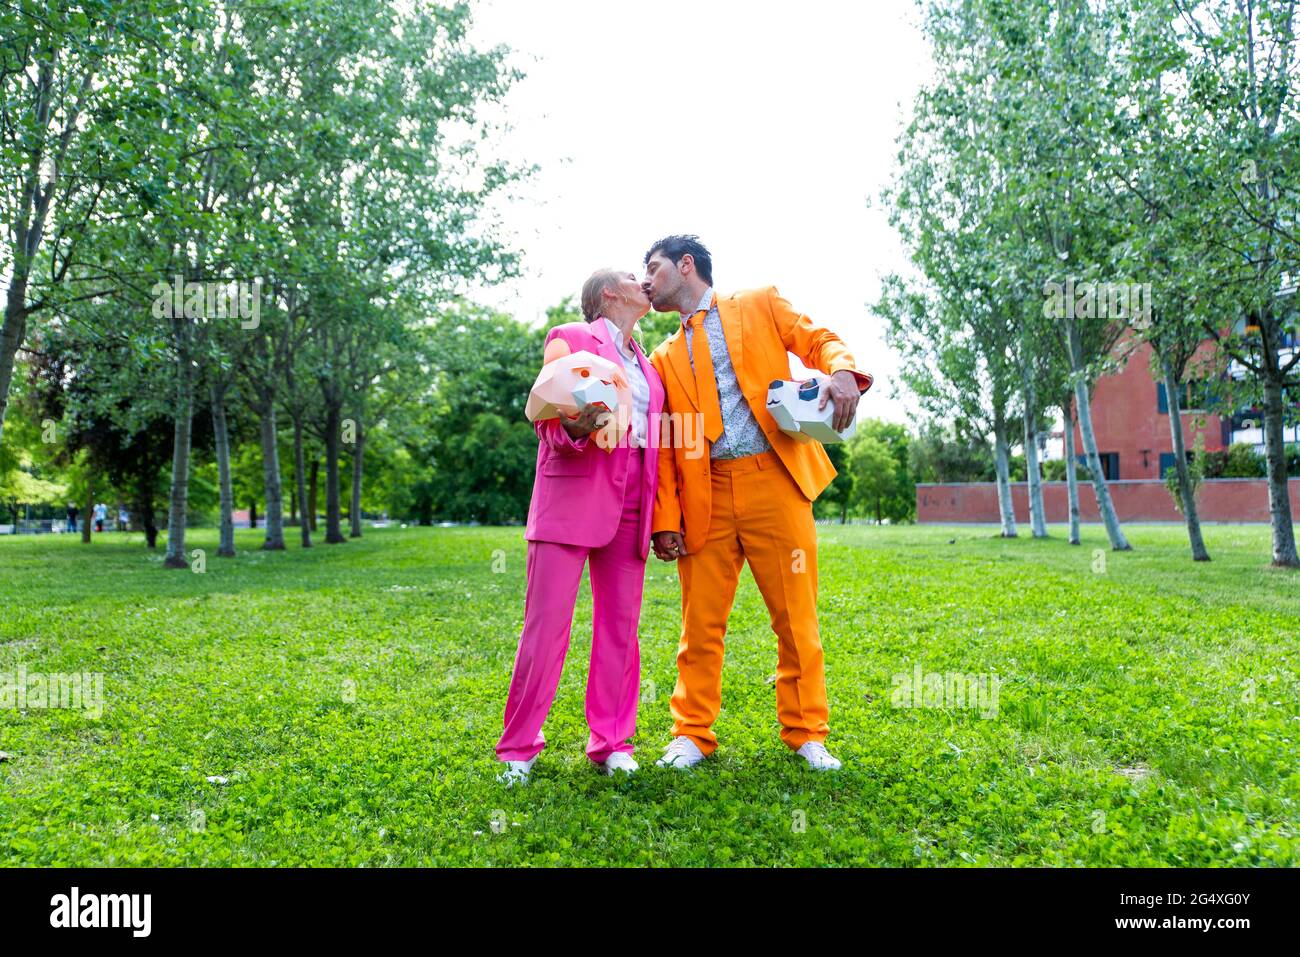 coupleÂ adulto indossa abiti vivaci che si baciano nel parco pubblico con maschere animali nelle mani Foto Stock